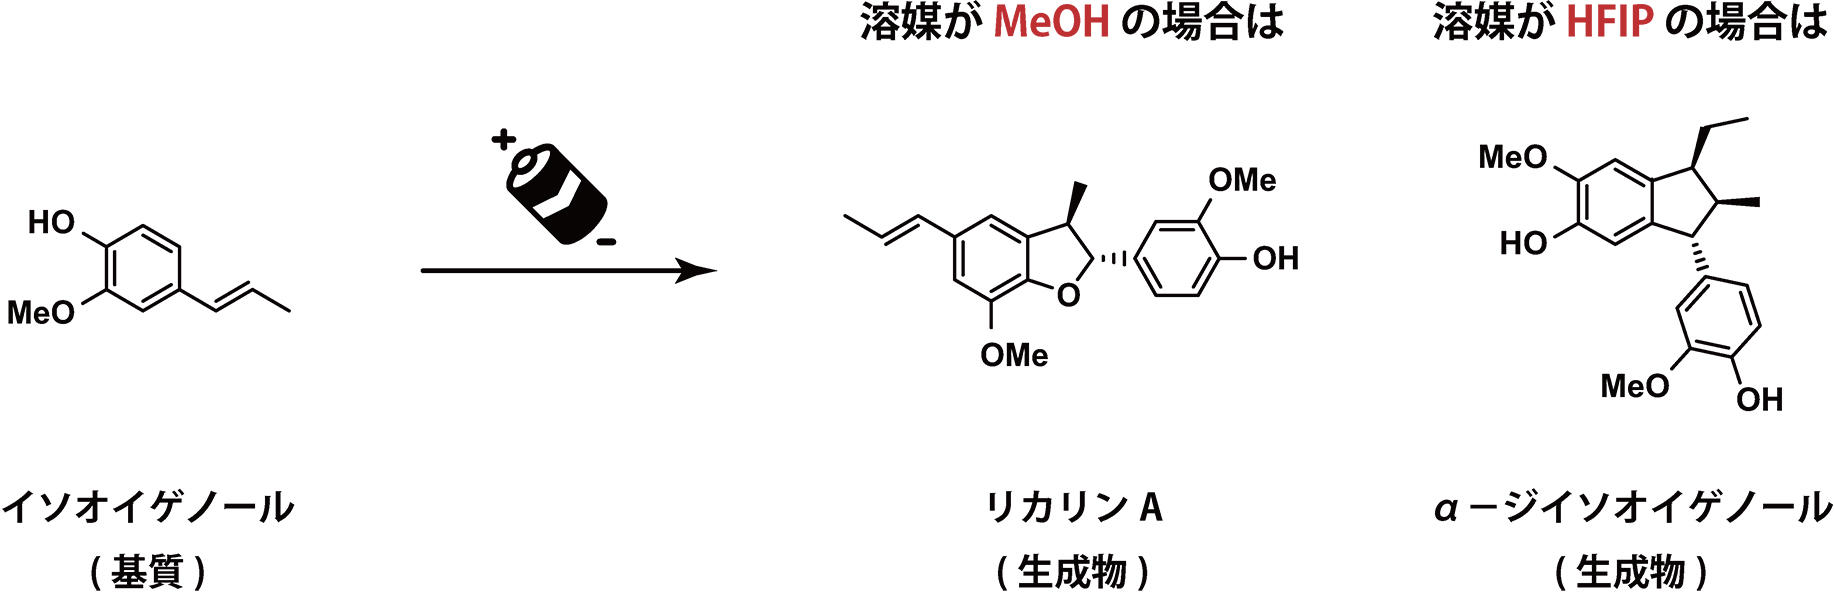 図2. 基質が同じでも、使用する溶媒が異なれば全く別の化合物ができる (こともある)。